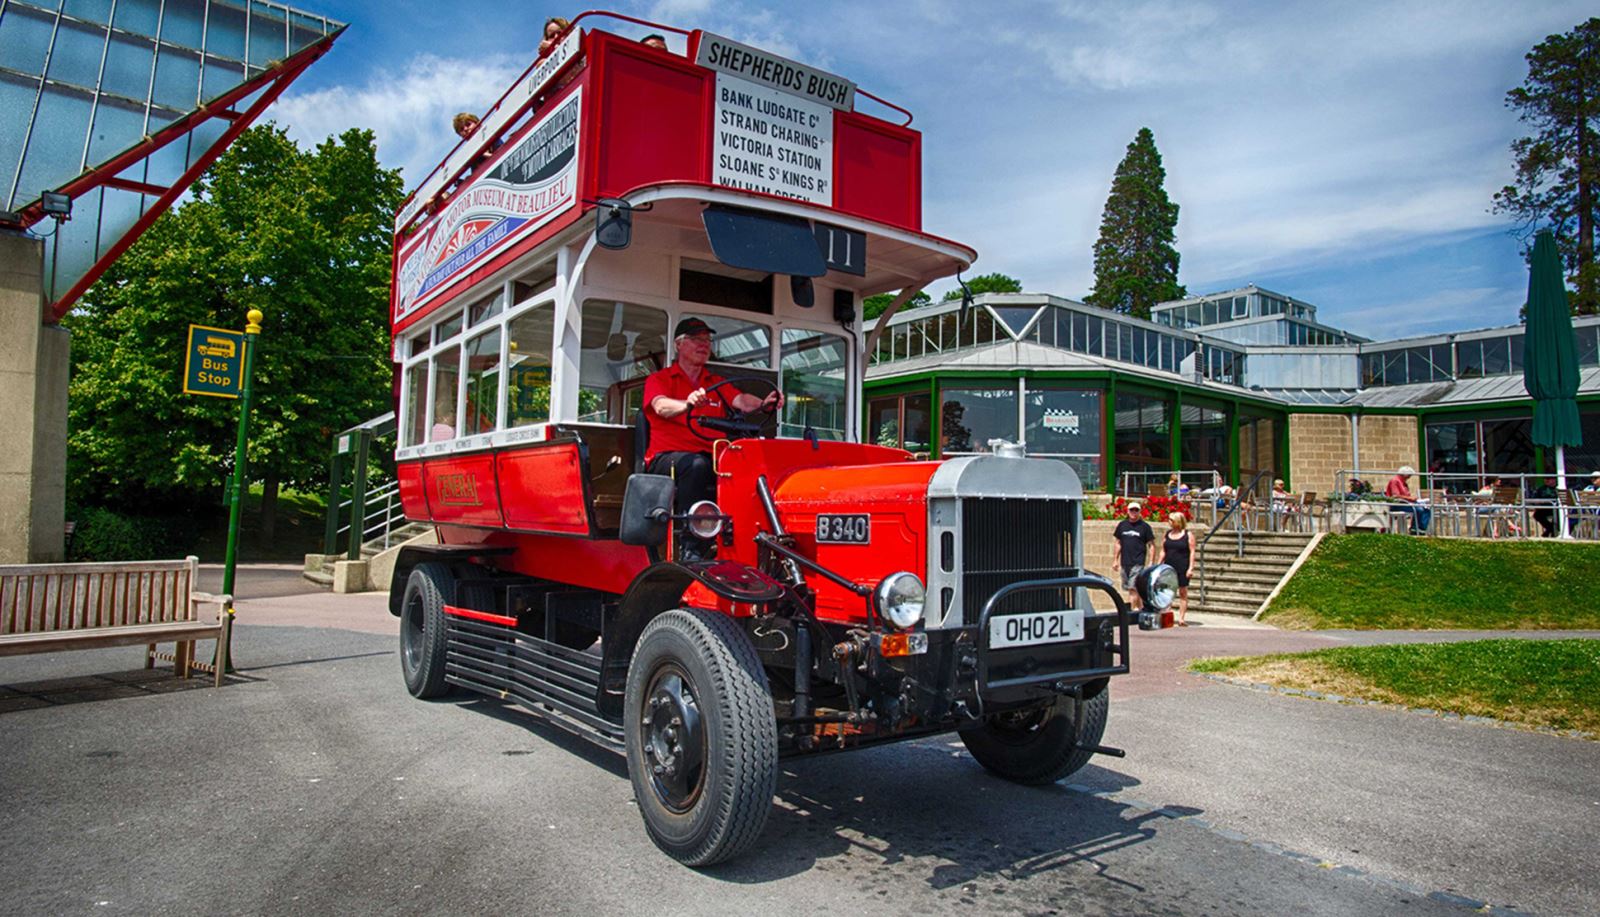 Vintage bus at Beaulieu National Motor Museum